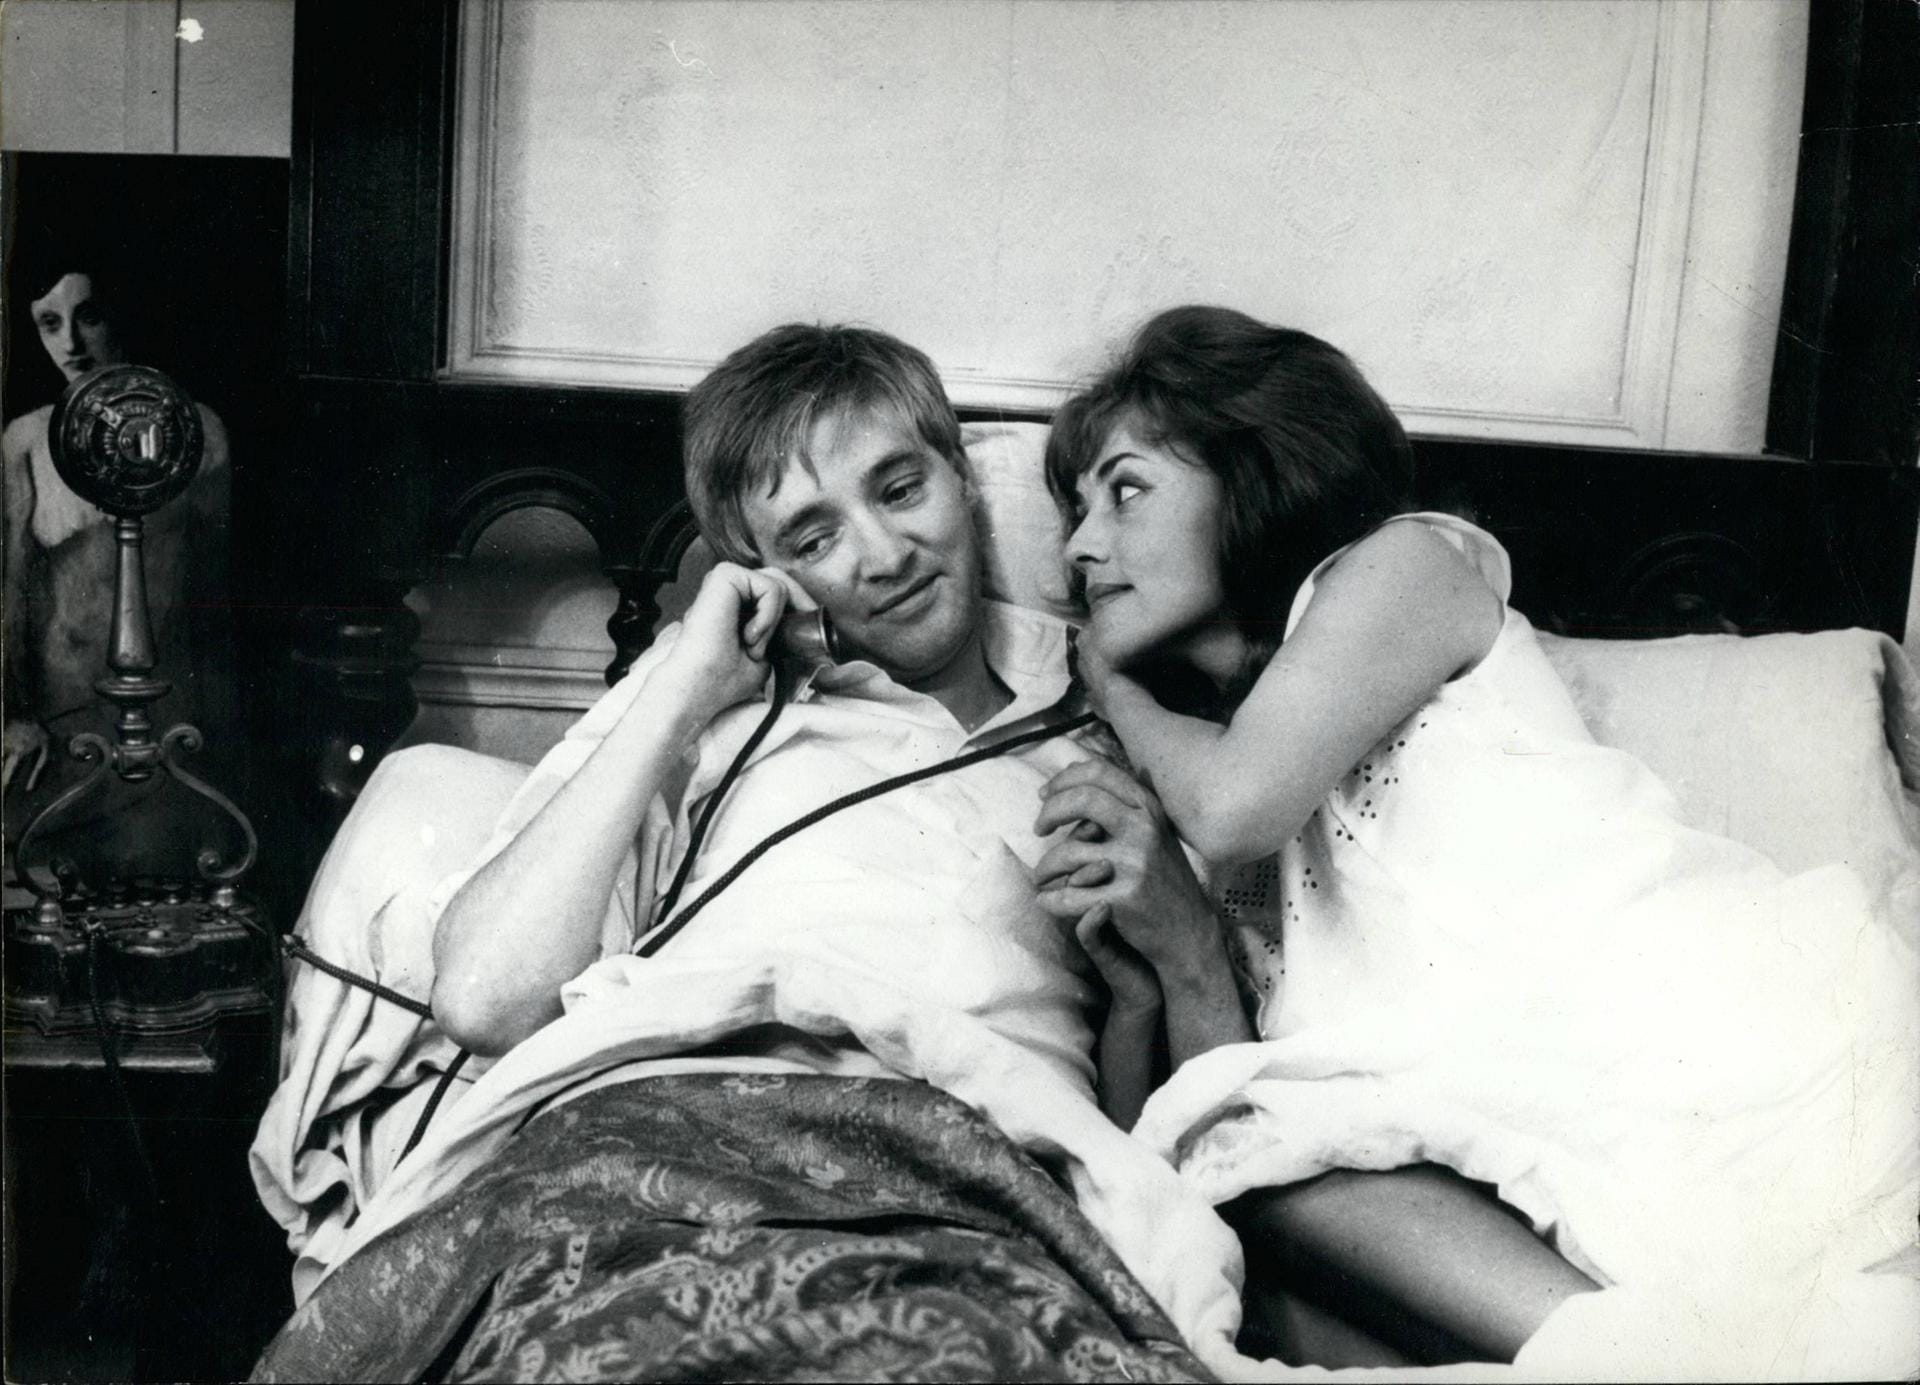 Zusammen mit dem österreichischen Oskar Werner spielte Moreau in ihrem international wohl bekanntesten Film "Jules und Jim". Der Kultfilm von François Truffaut sorgte 1962 für Furore wegen seines offen Umgangs mit dem Thema Dreierbeziehung.